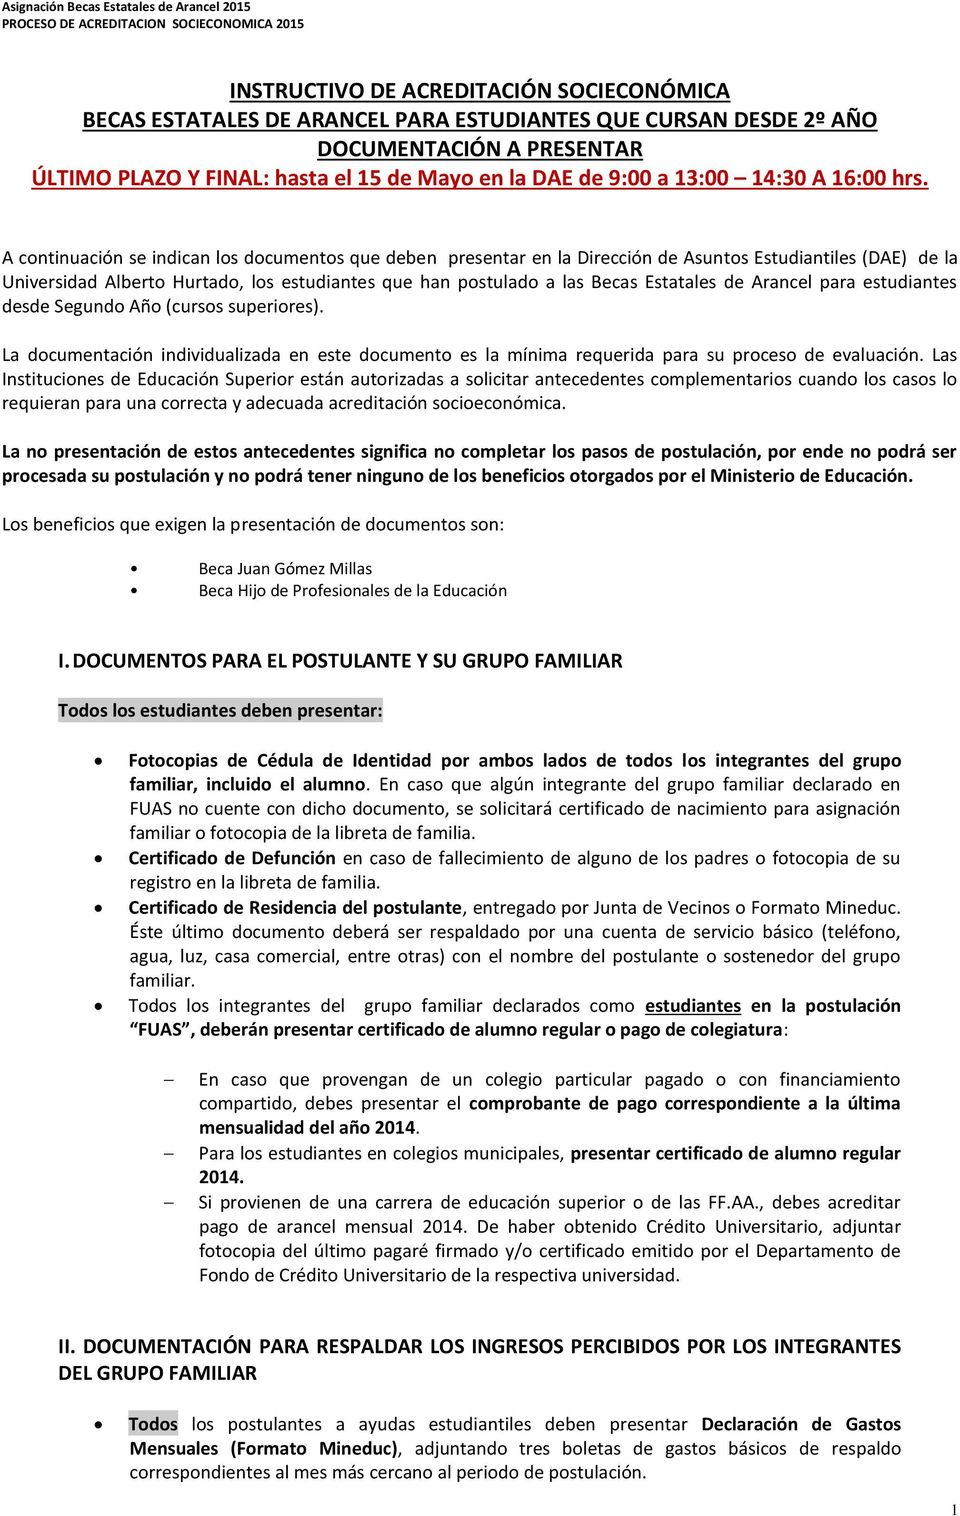 A continuación se indican los documentos que deben presentar en la Dirección de Asuntos Estudiantiles (DAE) de la Universidad Alberto Hurtado, los estudiantes que han postulado a las Becas Estatales